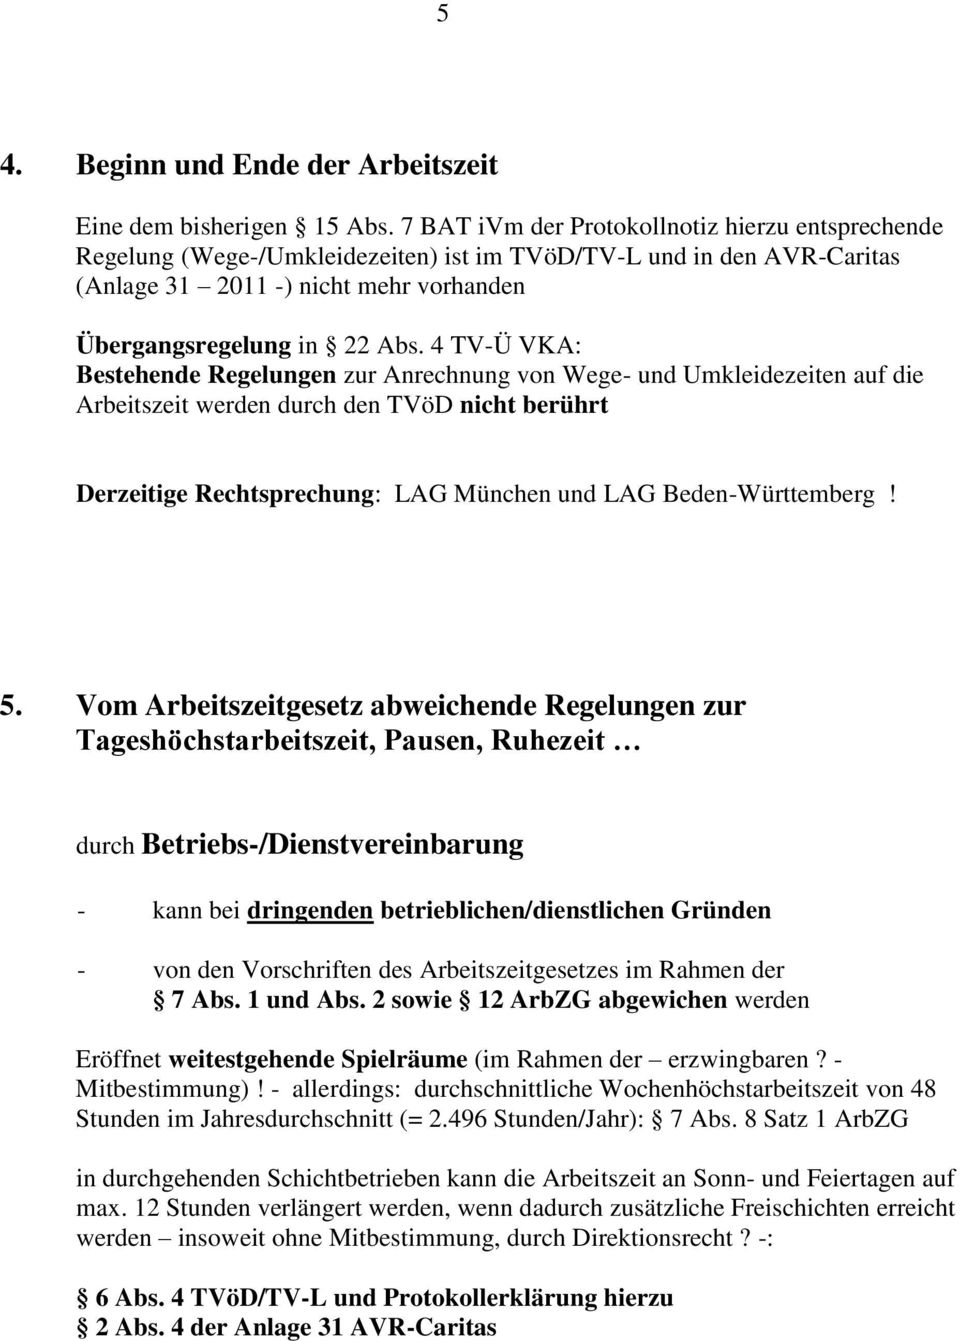 4 TV-Ü VKA: Bestehende Regelungen zur Anrechnung von Wege- und Umkleidezeiten auf die Arbeitszeit werden durch den TVöD nicht berührt Derzeitige Rechtsprechung: LAG München und LAG Beden-Württemberg!